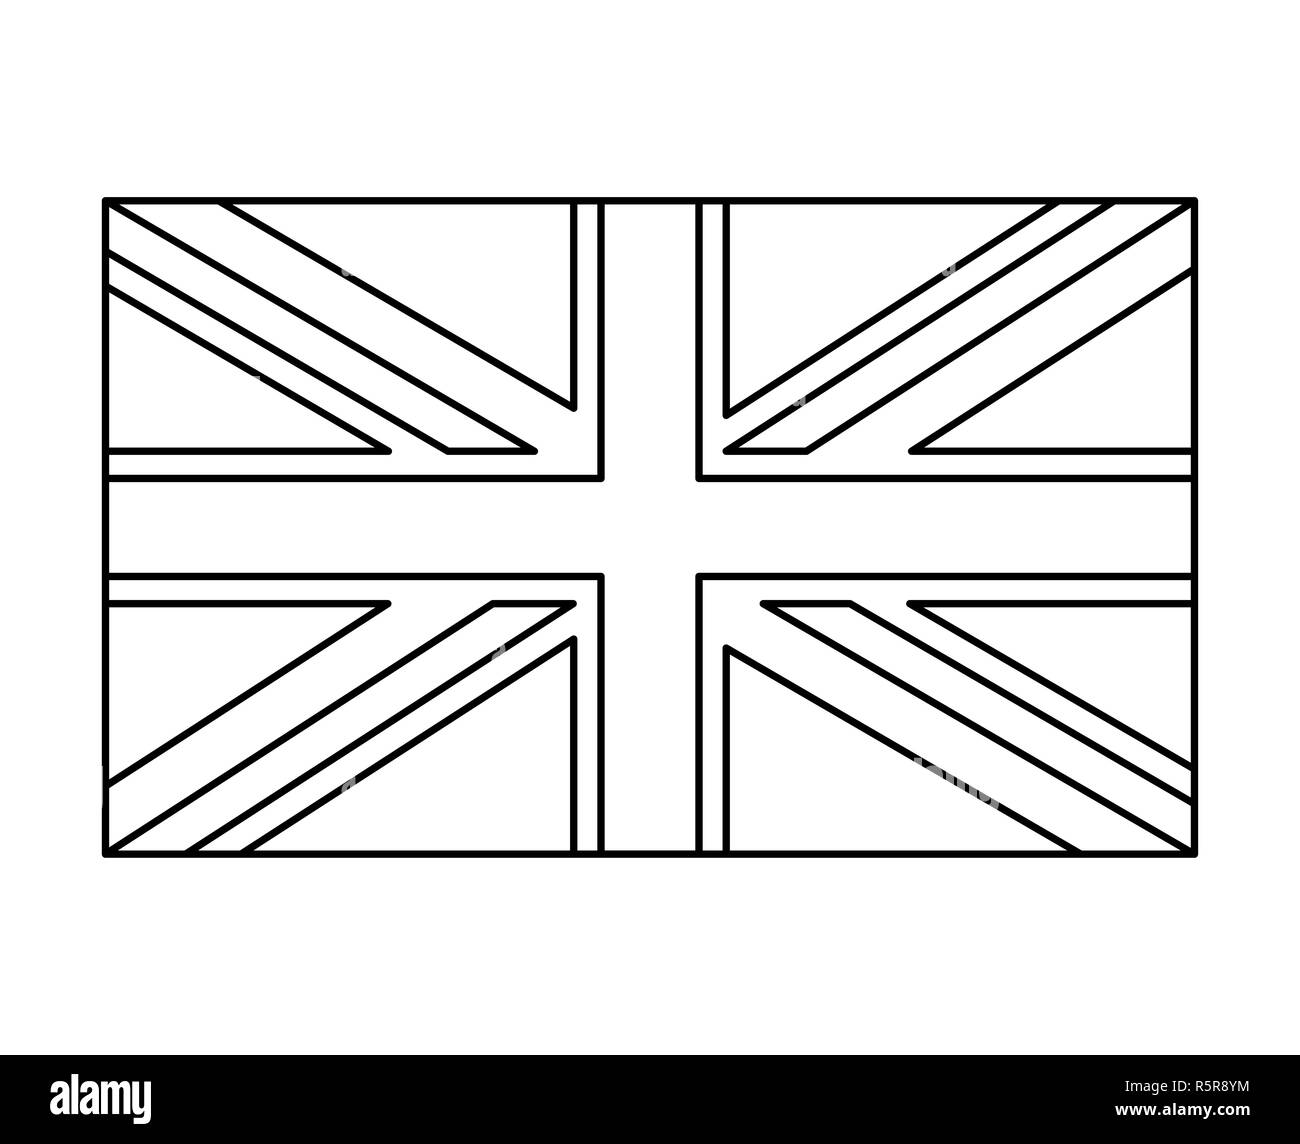 Union Jack Flag British Black and White Stock Photos & Images - Alamy